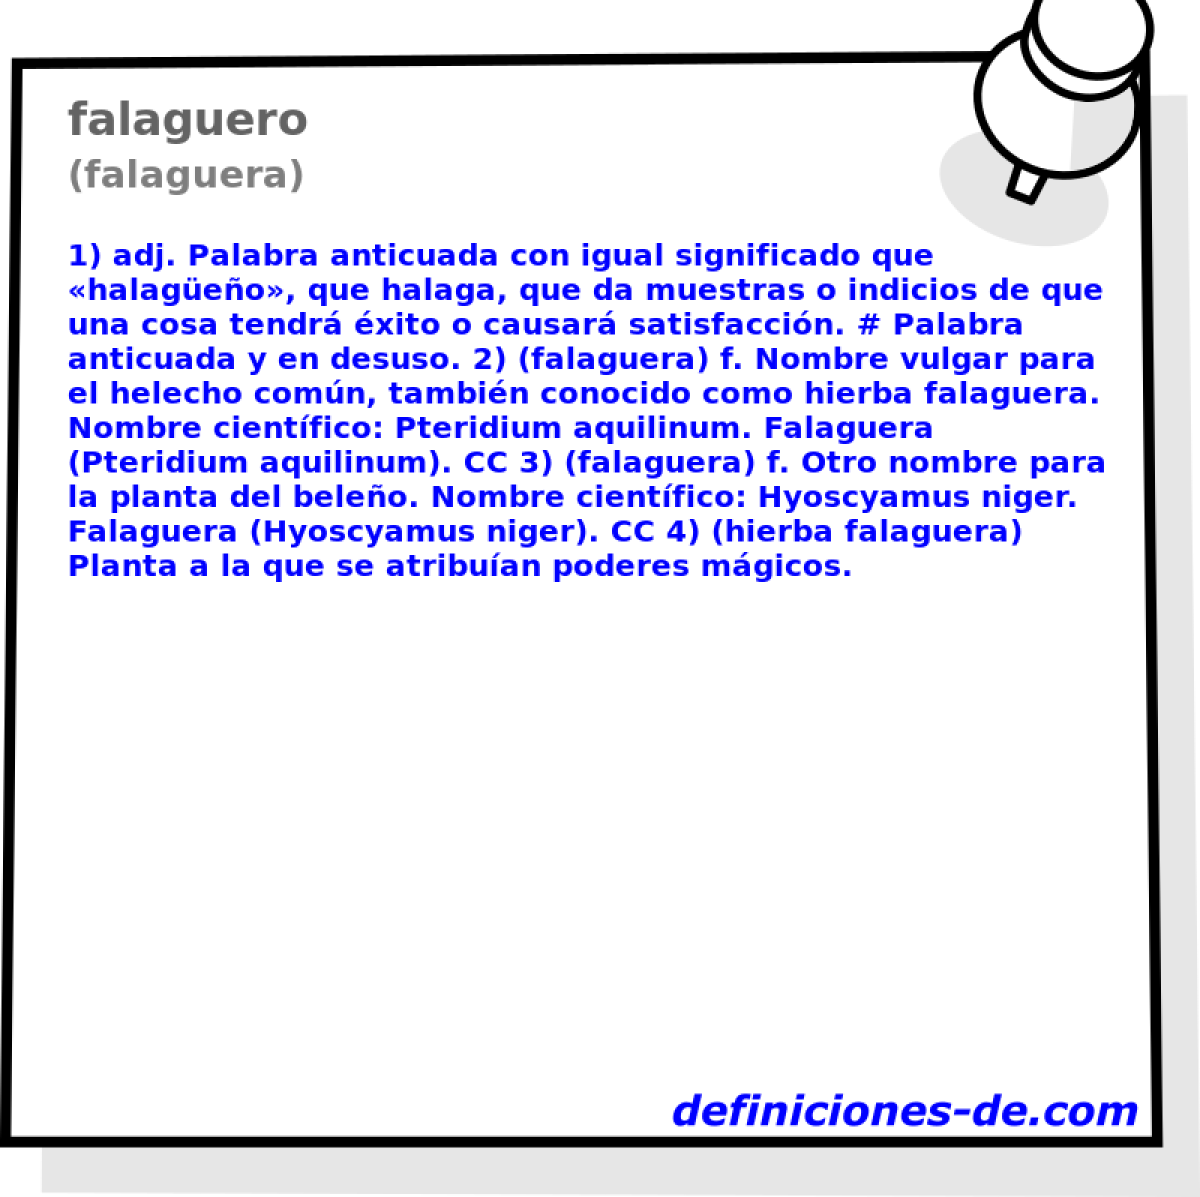 falaguero (falaguera)